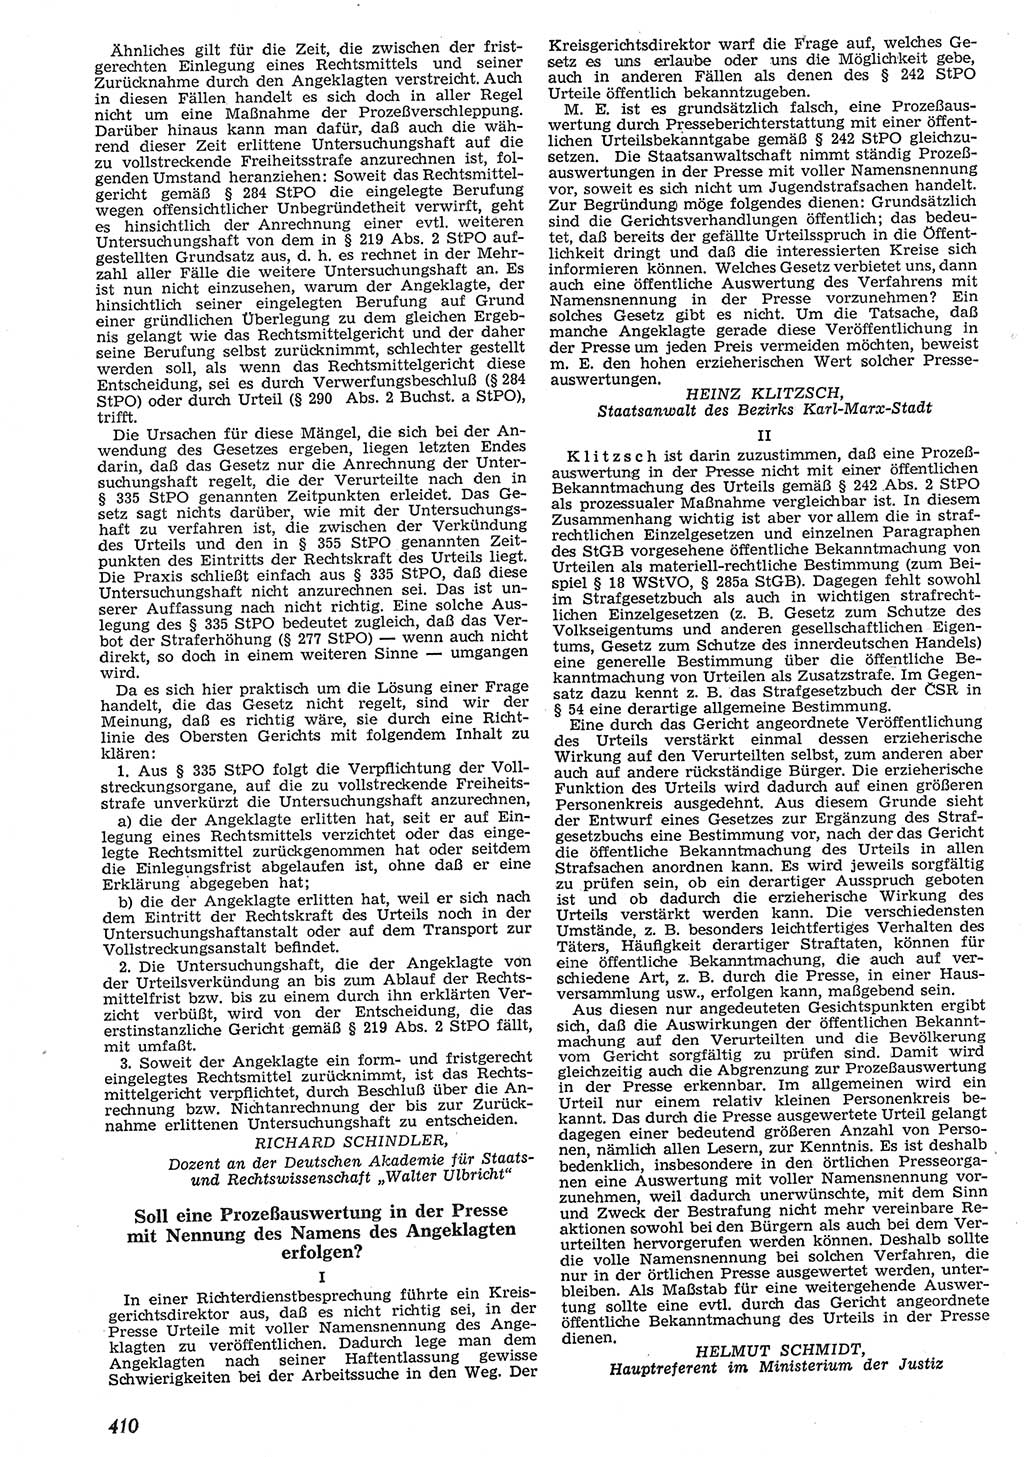 Neue Justiz (NJ), Zeitschrift für Recht und Rechtswissenschaft [Deutsche Demokratische Republik (DDR)], 10. Jahrgang 1956, Seite 410 (NJ DDR 1956, S. 410)